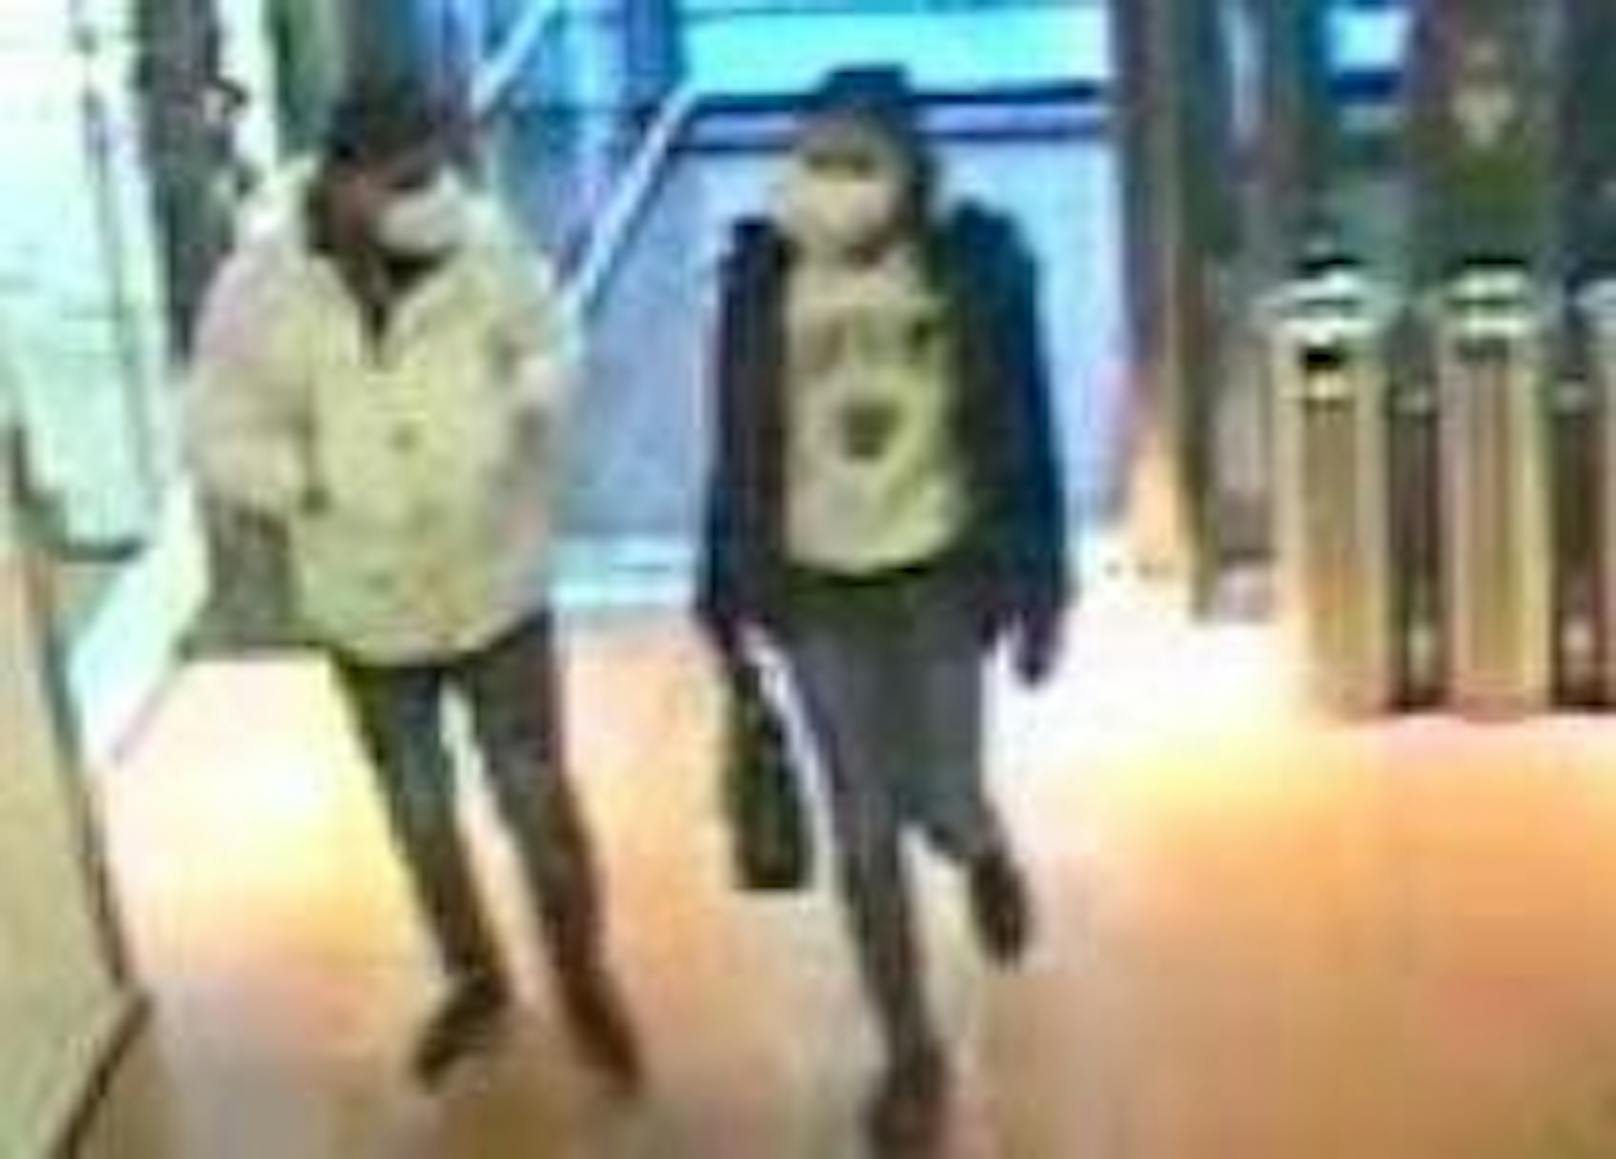 Die Polizei Wien sucht diese beiden Verdächtigen! Hinweise (auch anonym) werden an das Landeskriminalamt, Ermittlungsdienst unter der Telefonnummer 01-31310-33800 erbeten.